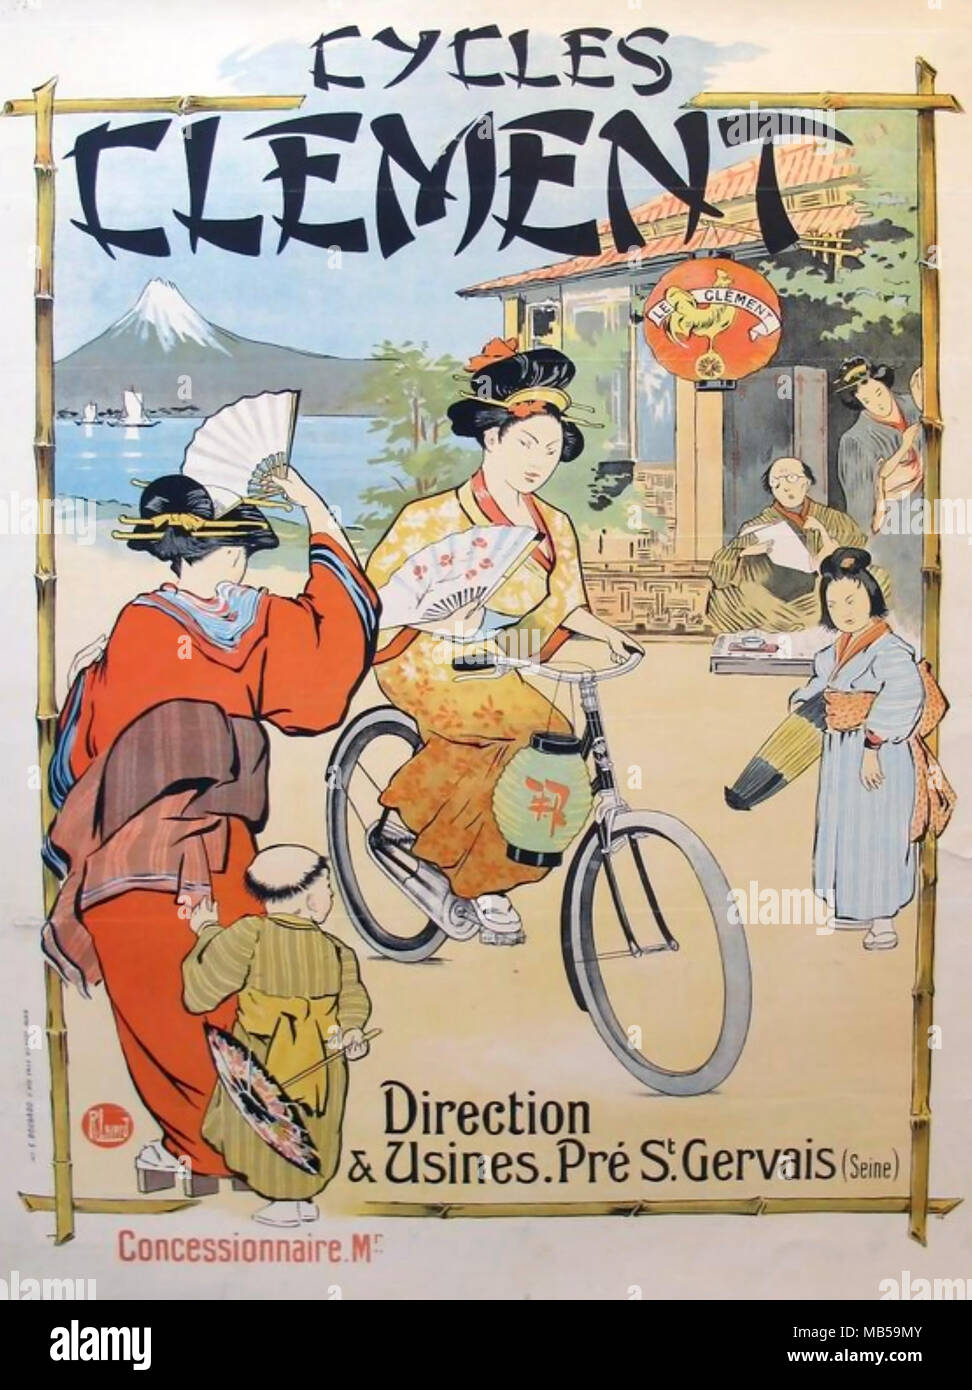 CLEMENT ZYKLEN französischer Fahrradhersteller Anzeige um 1905 die Förderung der Verkäufe in Japan Stockfoto